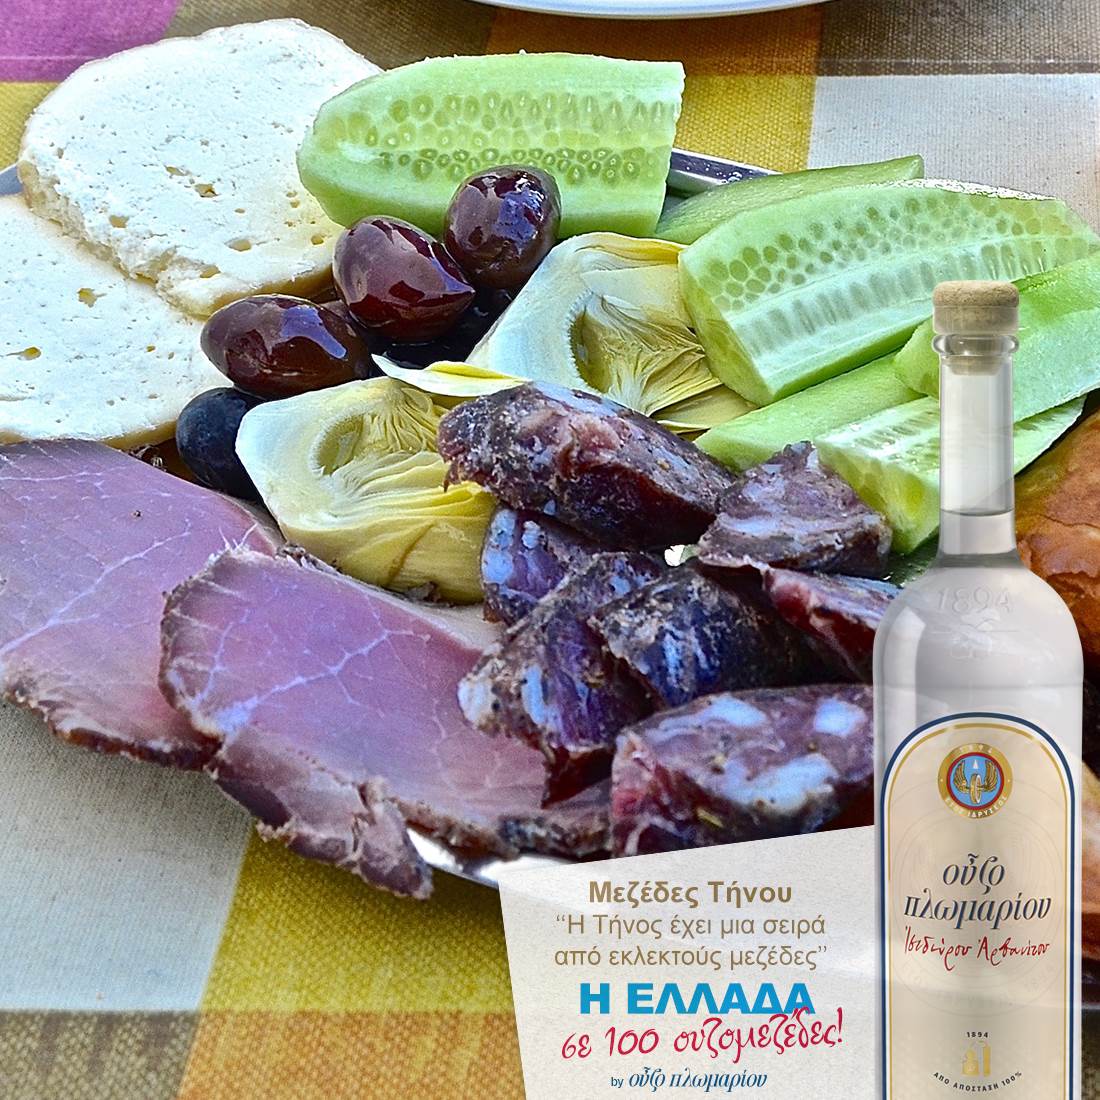 Μεζέδες Τήνου - Ουζομεζέδες - Greek Gastronomy Guide